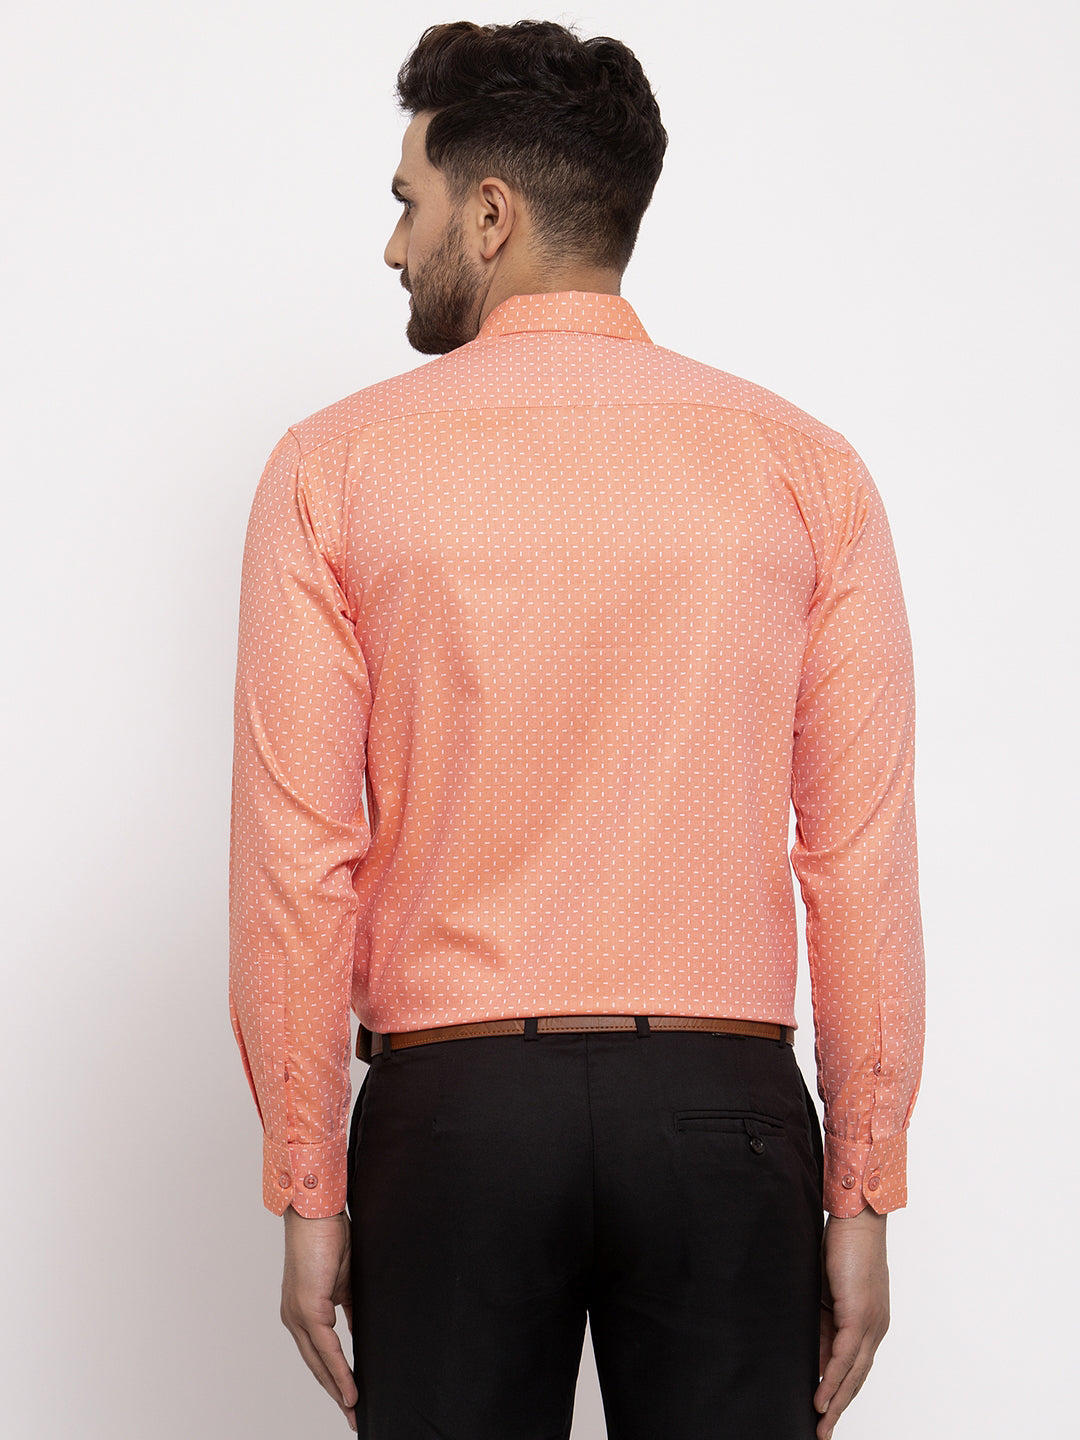 Men's Peach Cotton Printed Formal Shirt's ( SF 774Peach ) - Jainish